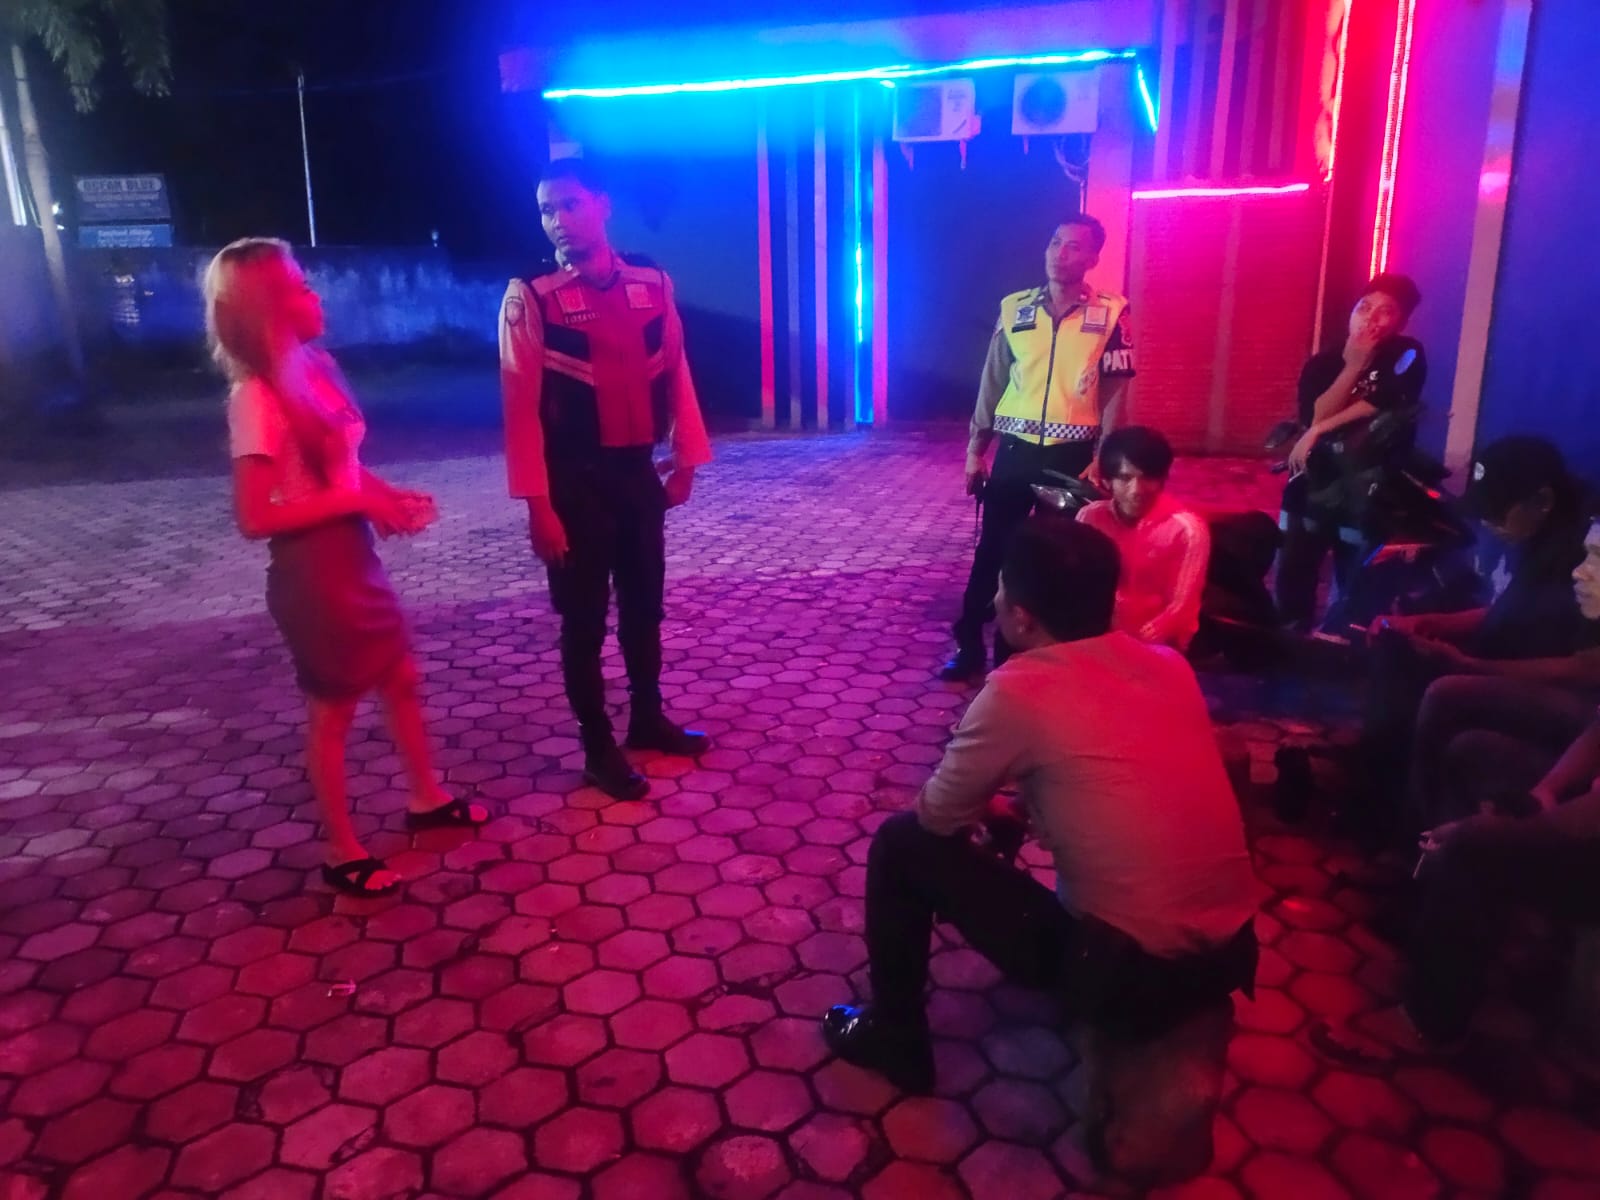 Patroli Dialogis Polisi di Lombok Barat, Ciptakan Rasa Aman dan Nyaman di Tempat Hiburan Malam